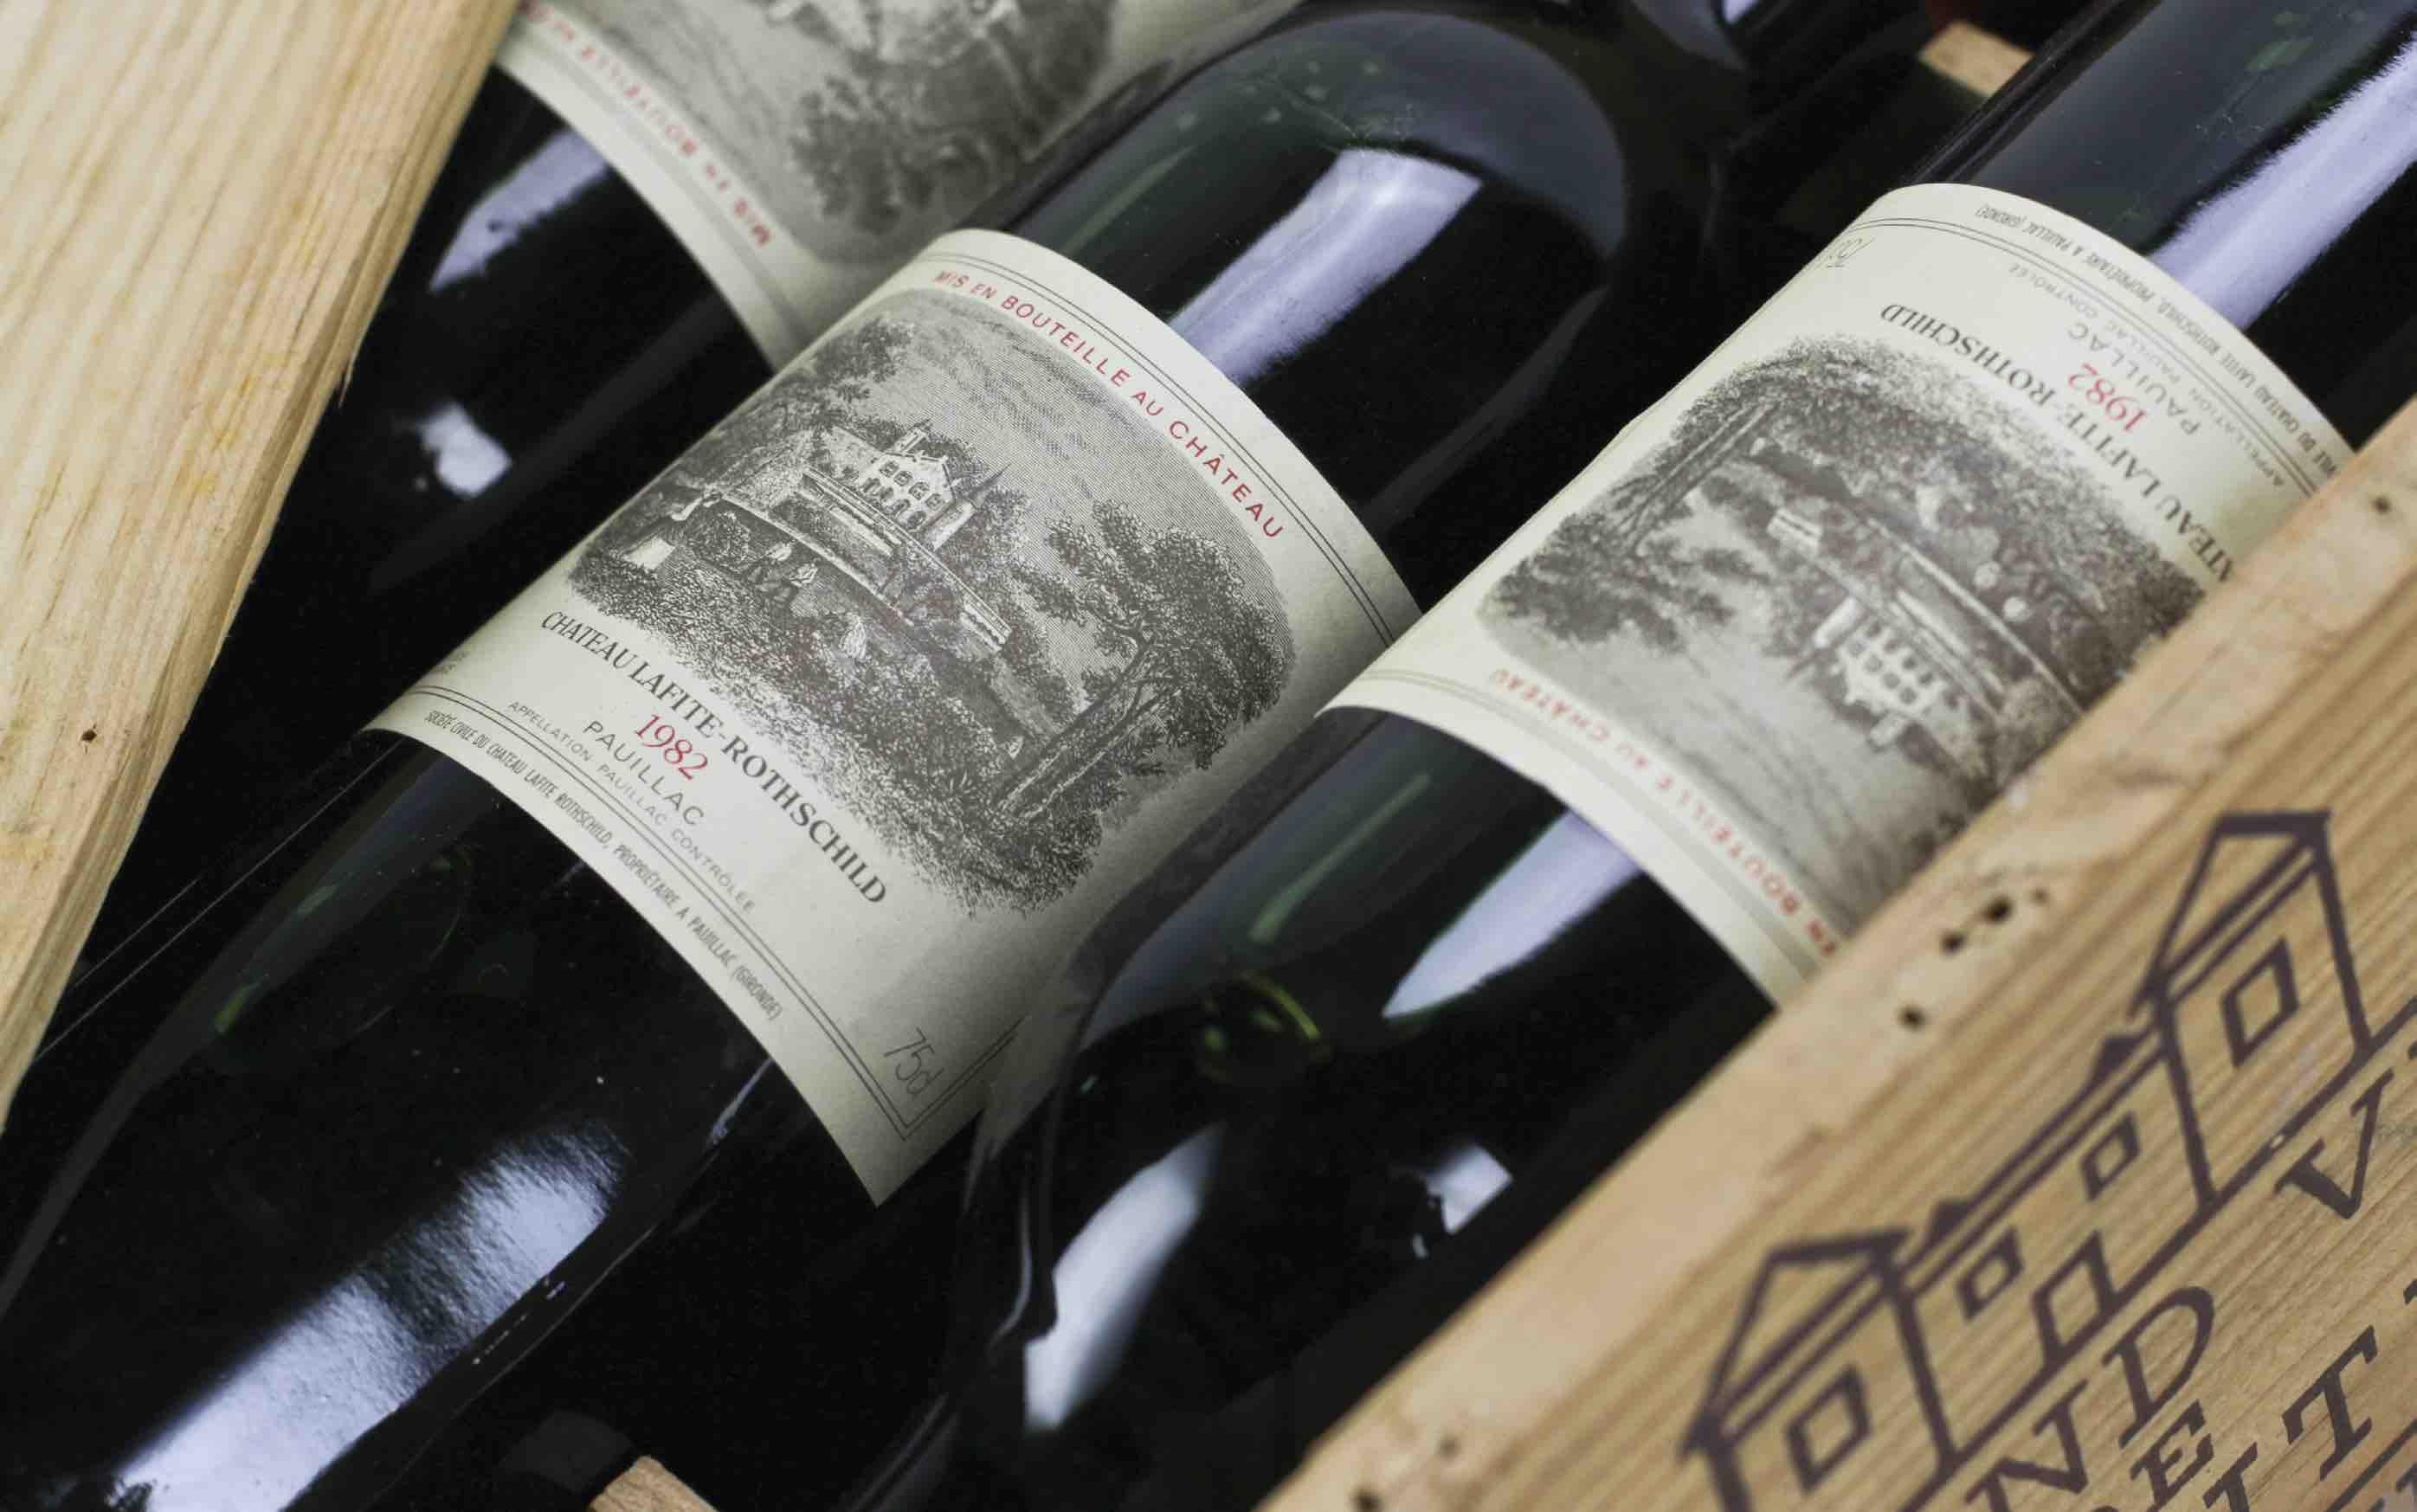 法国血骑士酒庄尼姆干红葡萄酒红酒Le Sang des Seigneurs-COSTIÈRES DE NÎMES 2018